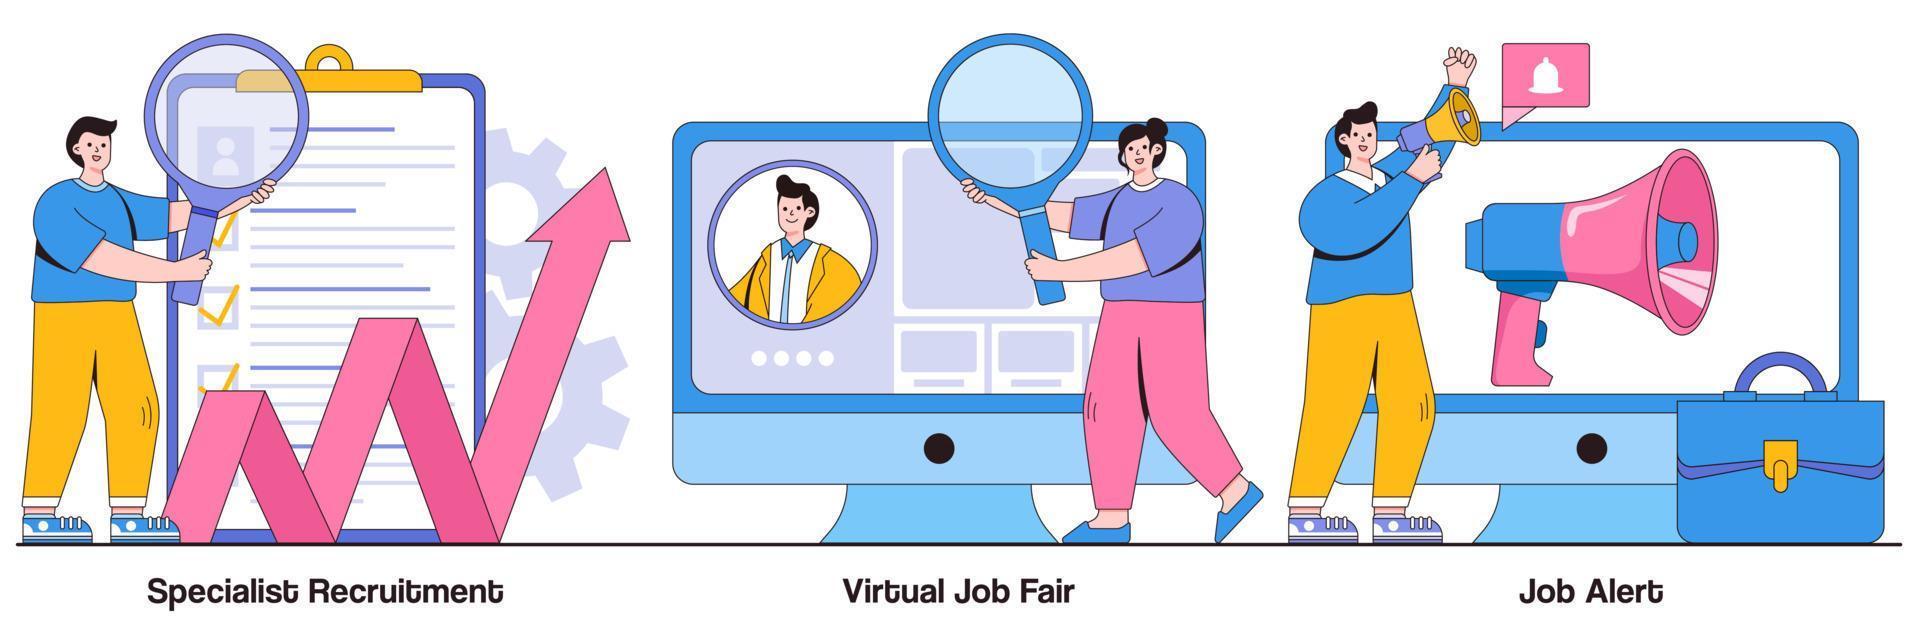 recrutamento especializado, feira de emprego virtual, alerta de emprego com pacote de ilustrações de personagens de pessoas vetor